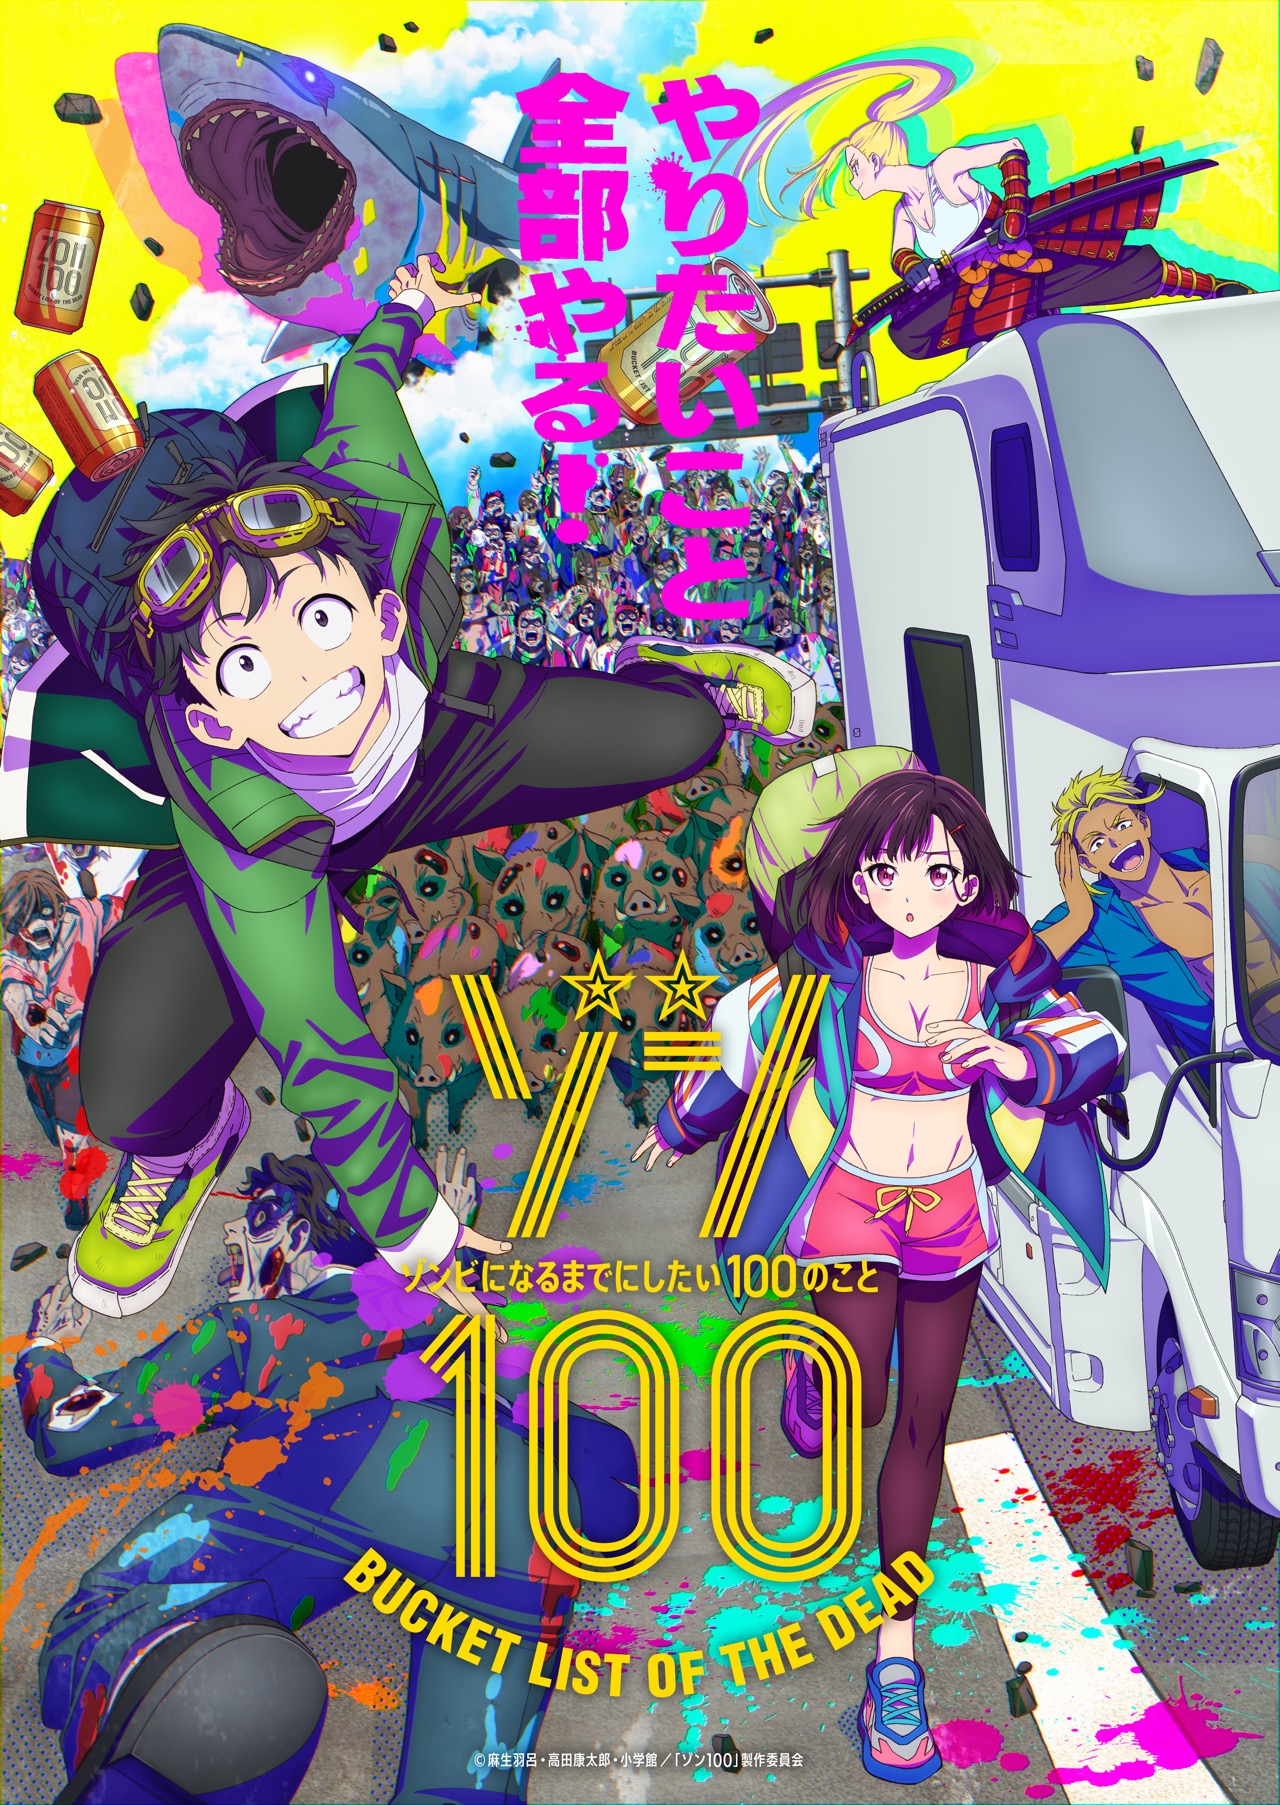 Zom 100: Bucket List of the Dead' Anime Key Visual : r/anime